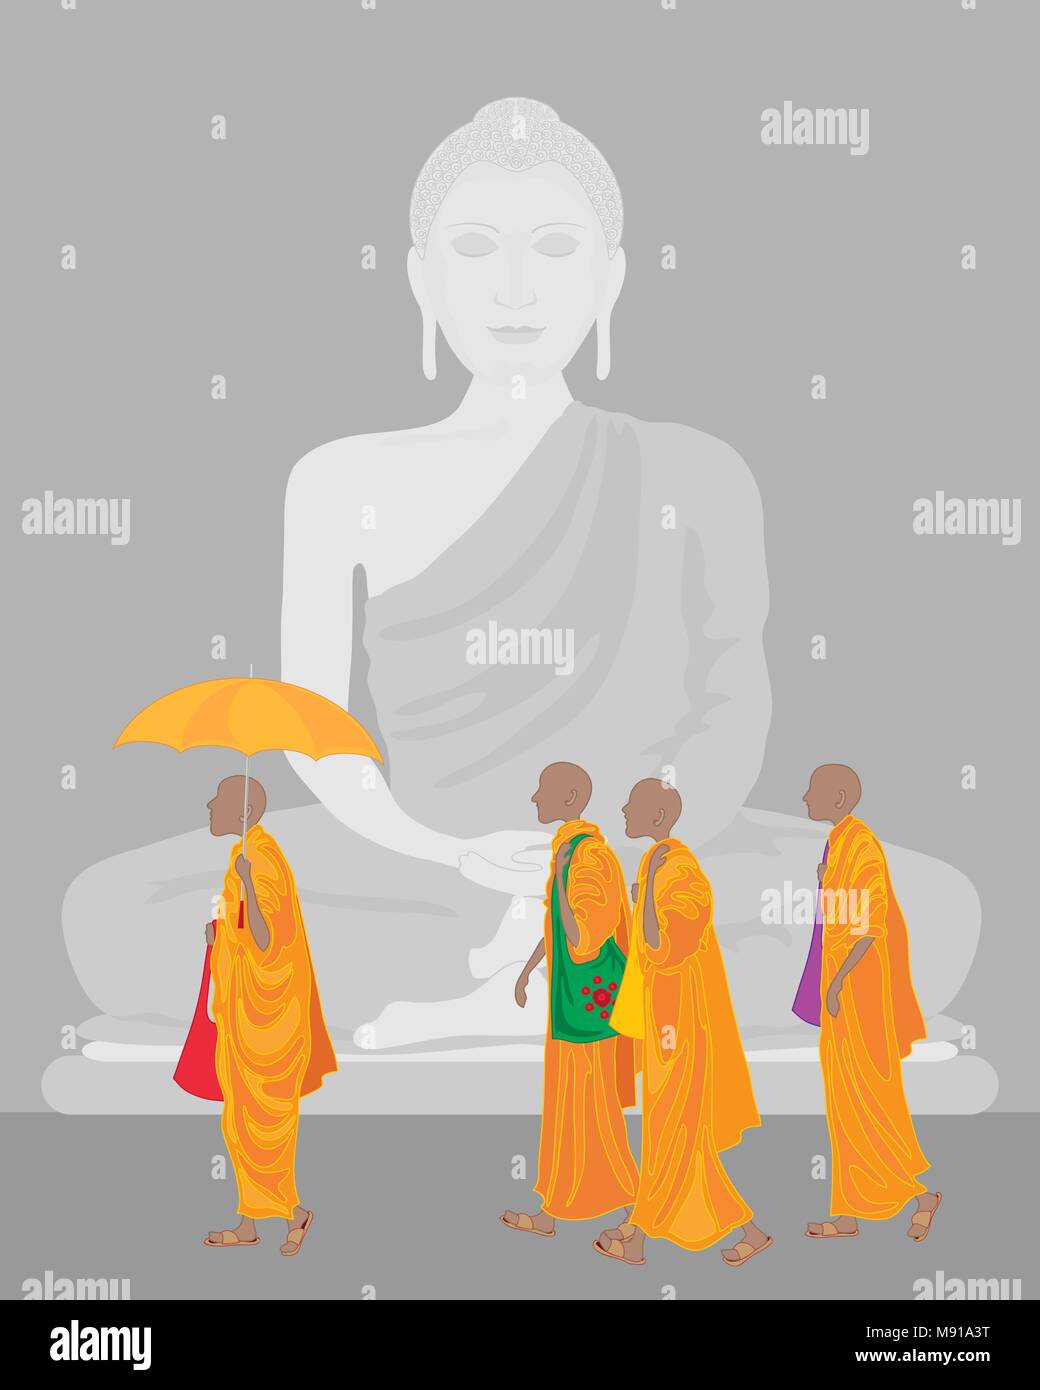 Ein Vektor Abbildung im EPS-Format von einem Stein Statue von Buddha mit Pilgrim buddhistische Mönche in orangefarbenen Gewändern Stock Vektor